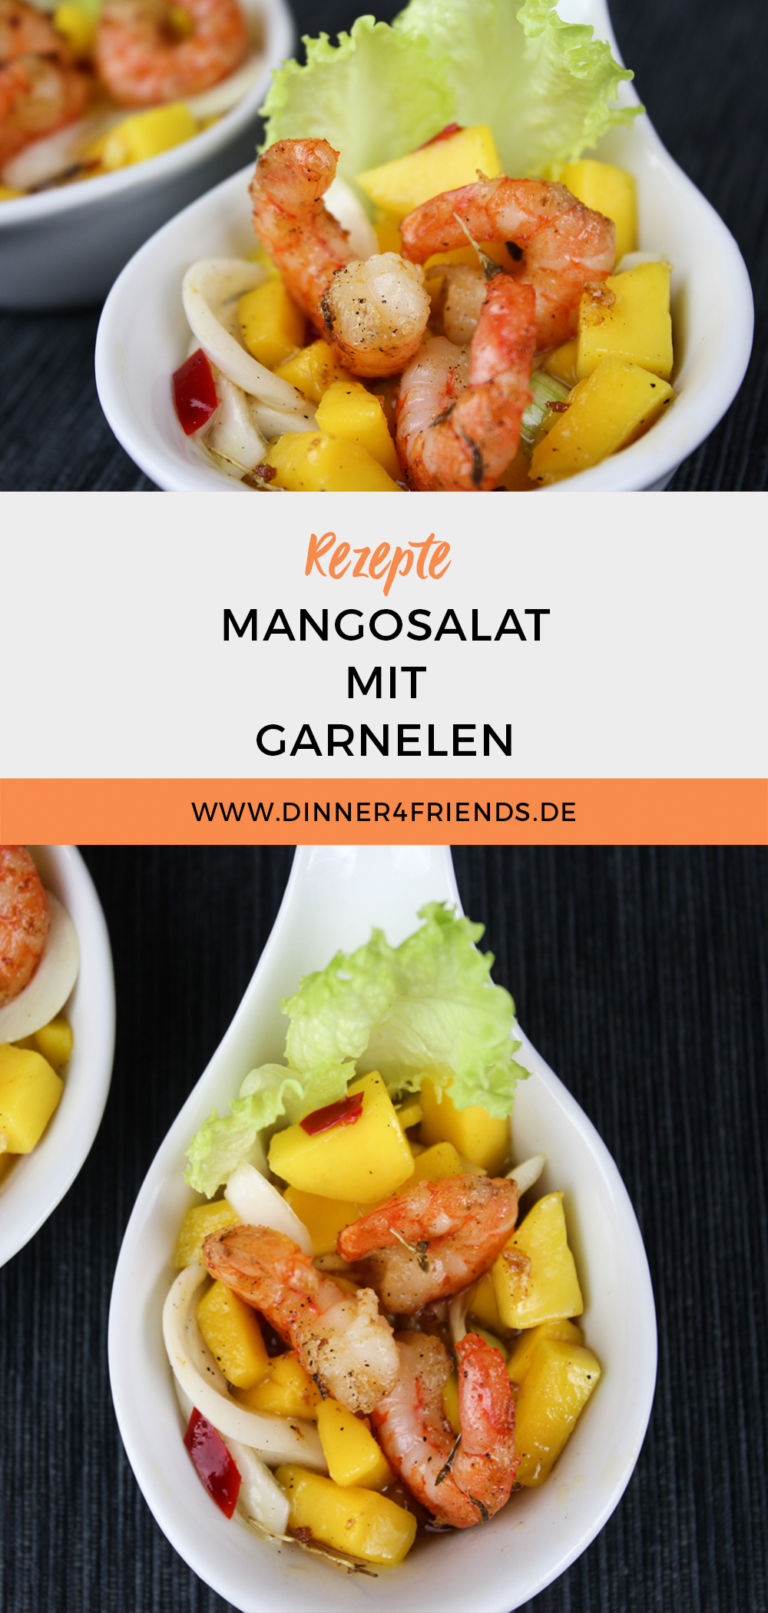 Mangosalat mit Garnelen nach Johann Lafer - Dinner4Friends